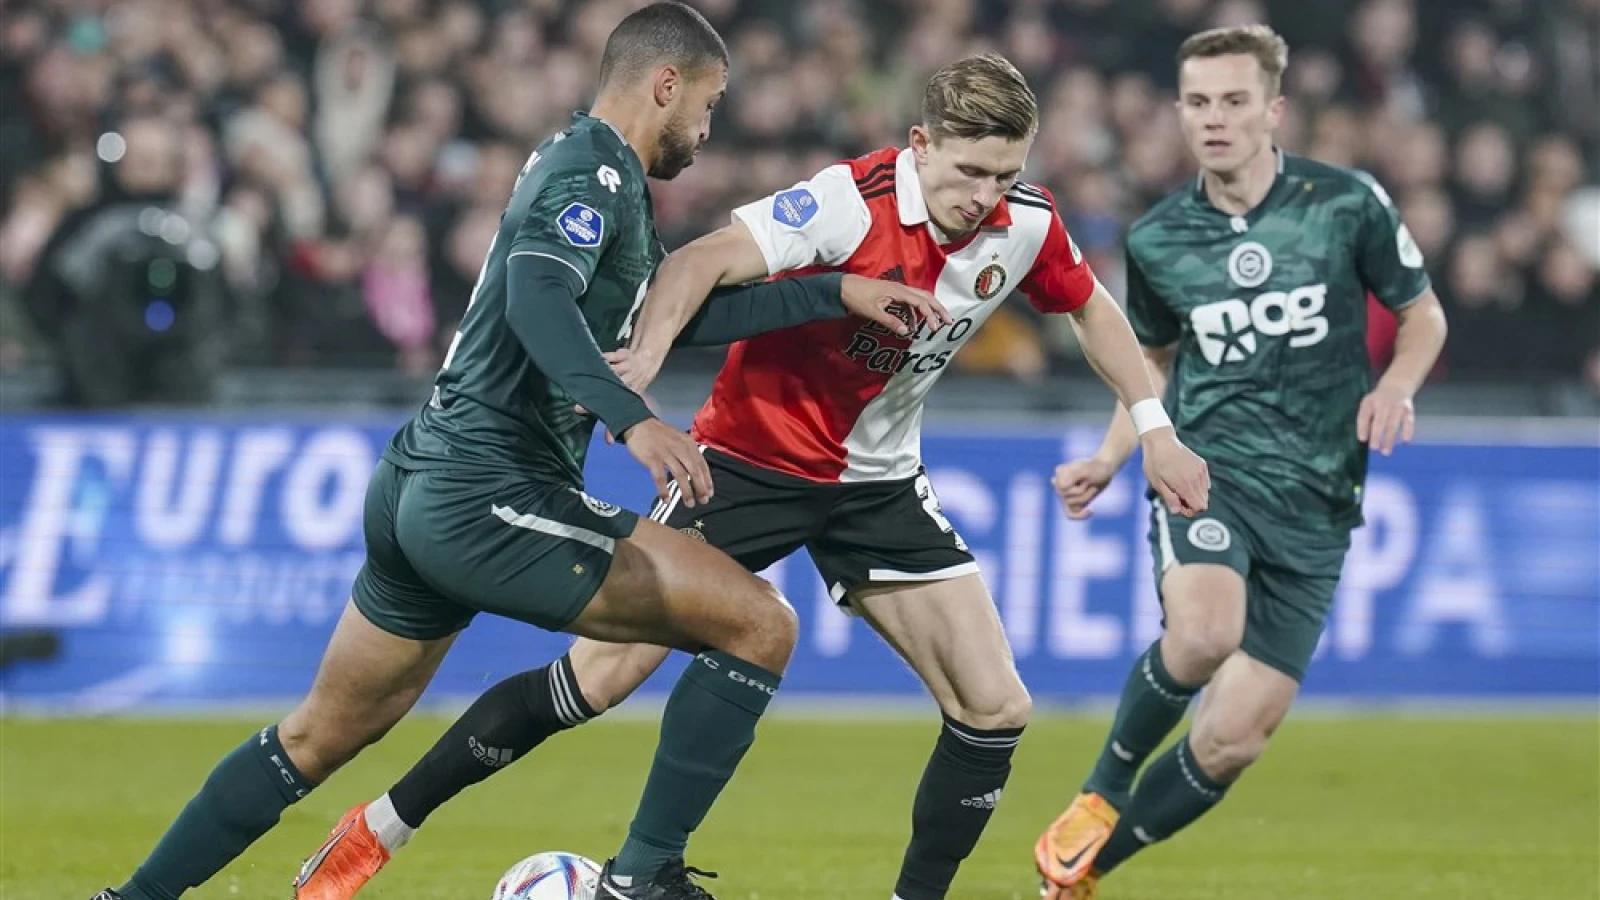 LIVE | Feyenoord - FC Groningen 1-0 | Einde wedstrijd